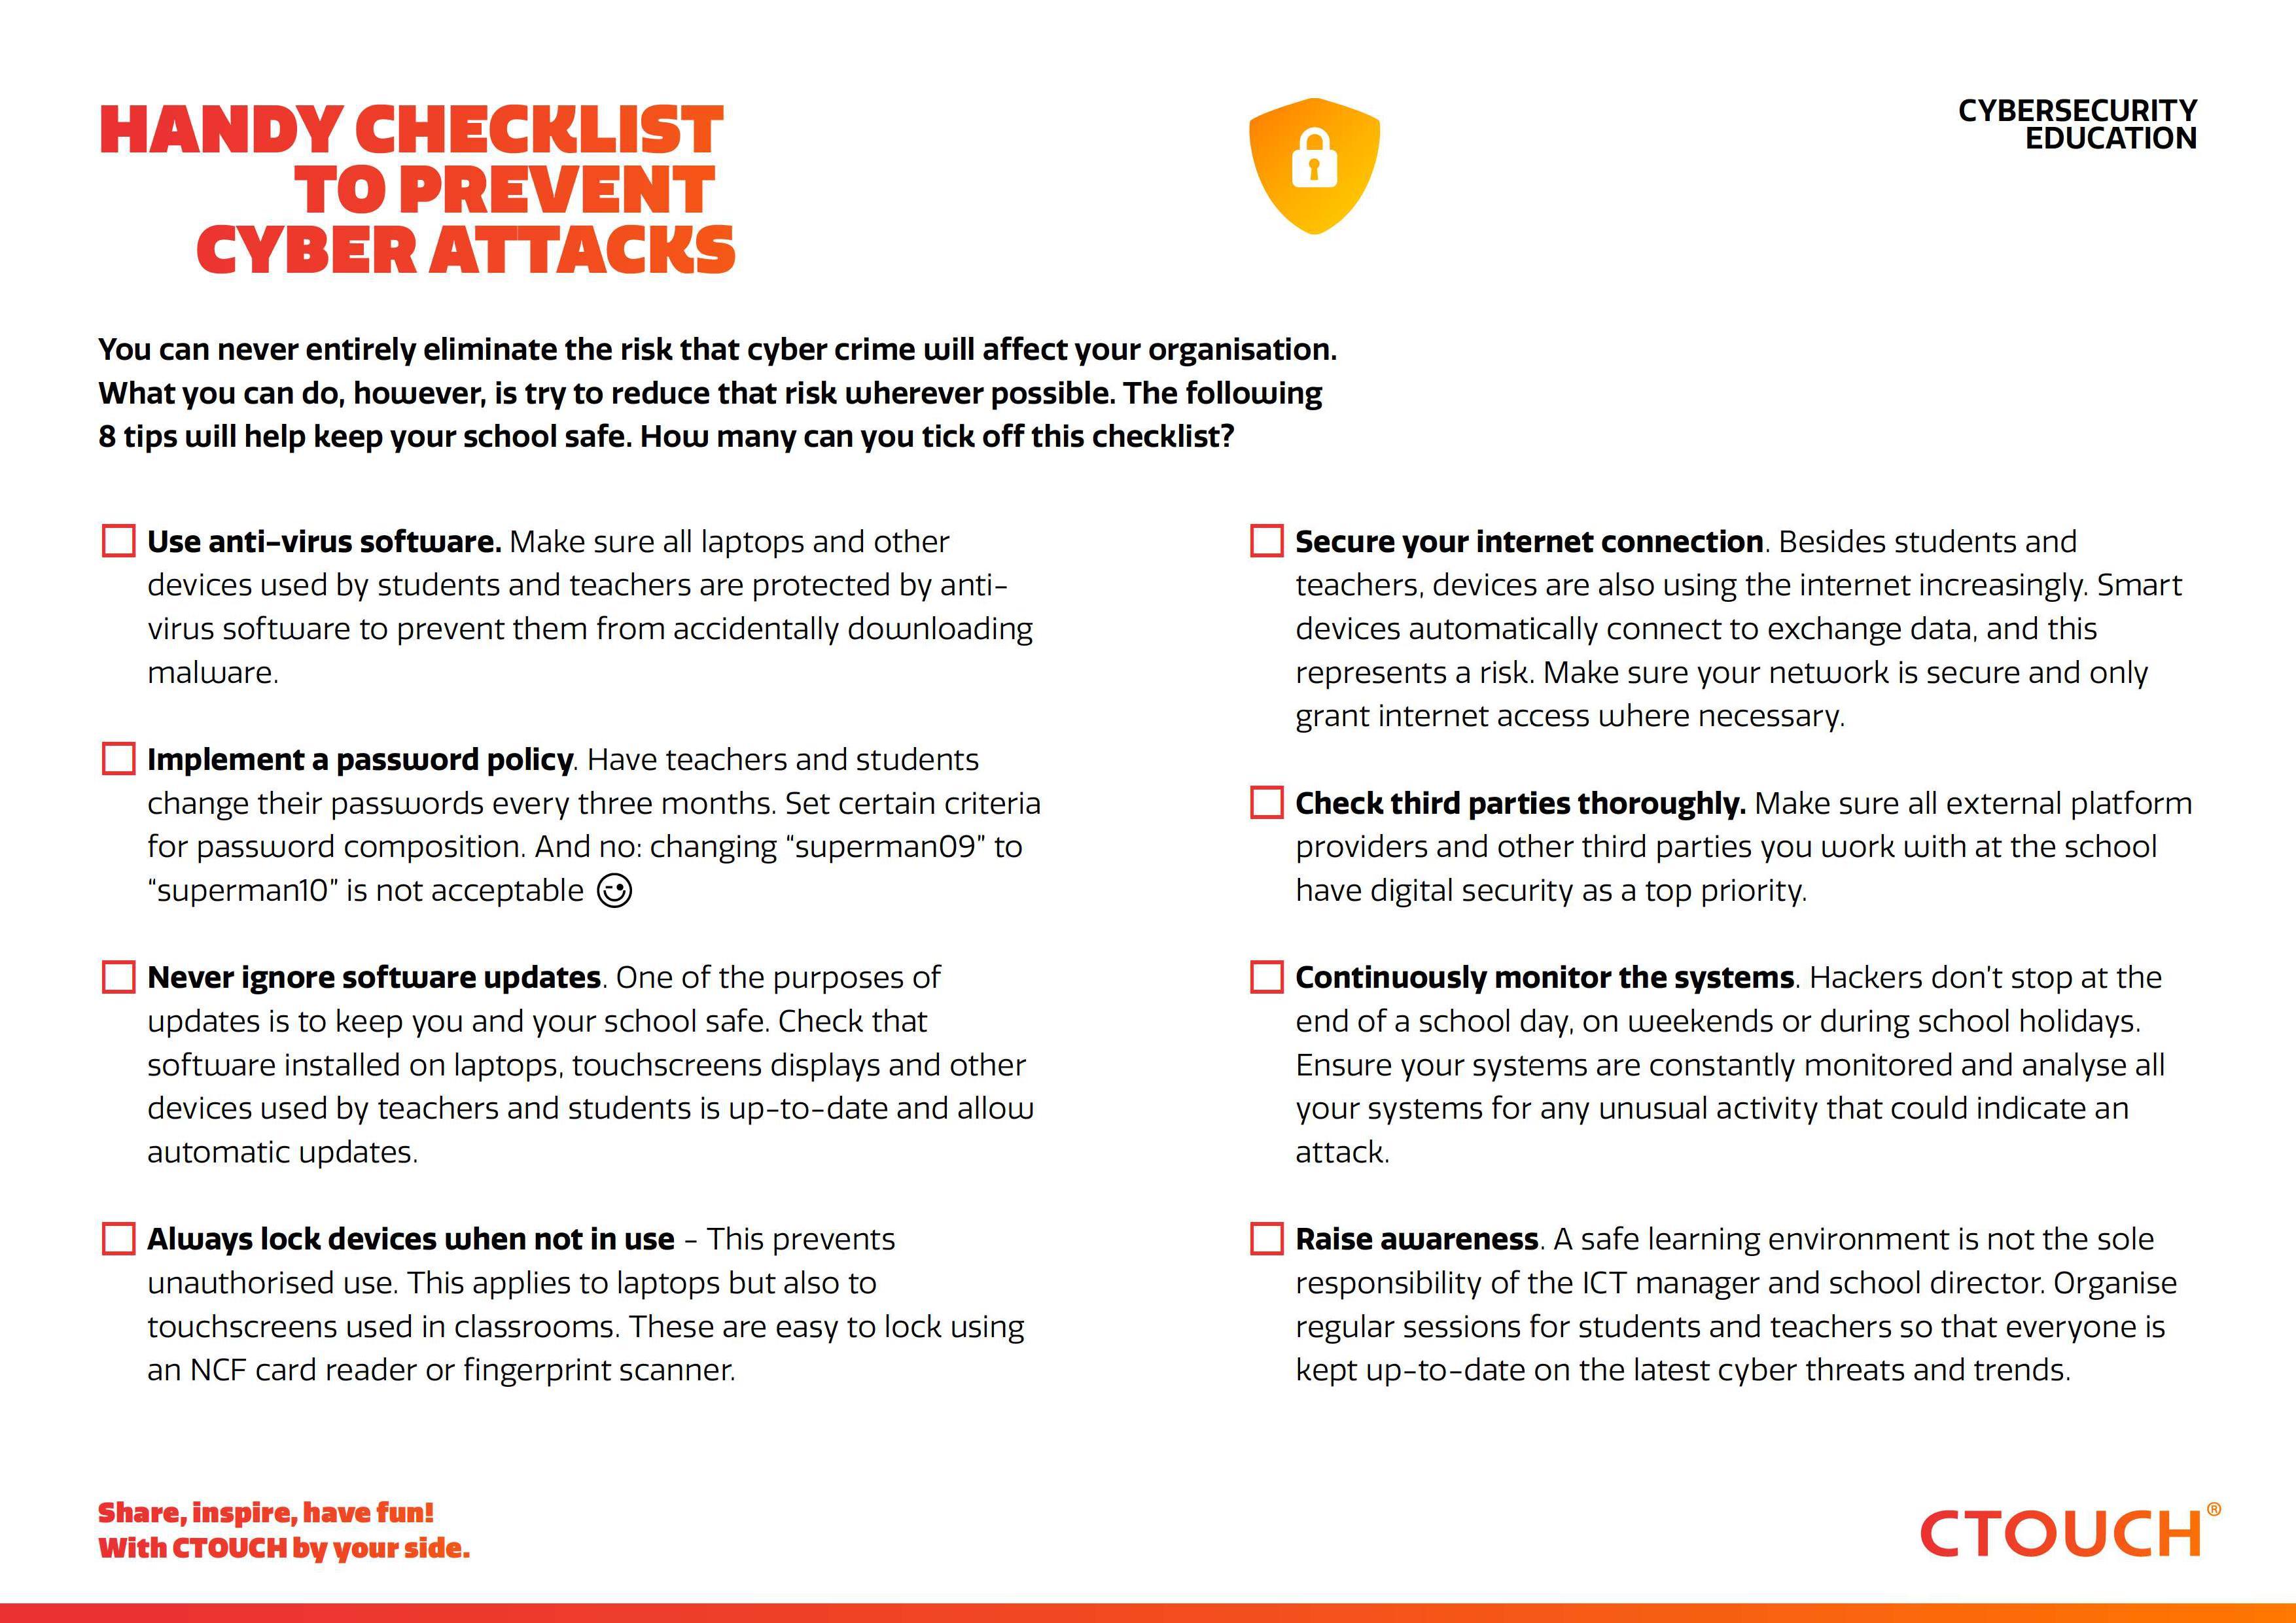 Checklist to prevent cyber attacks